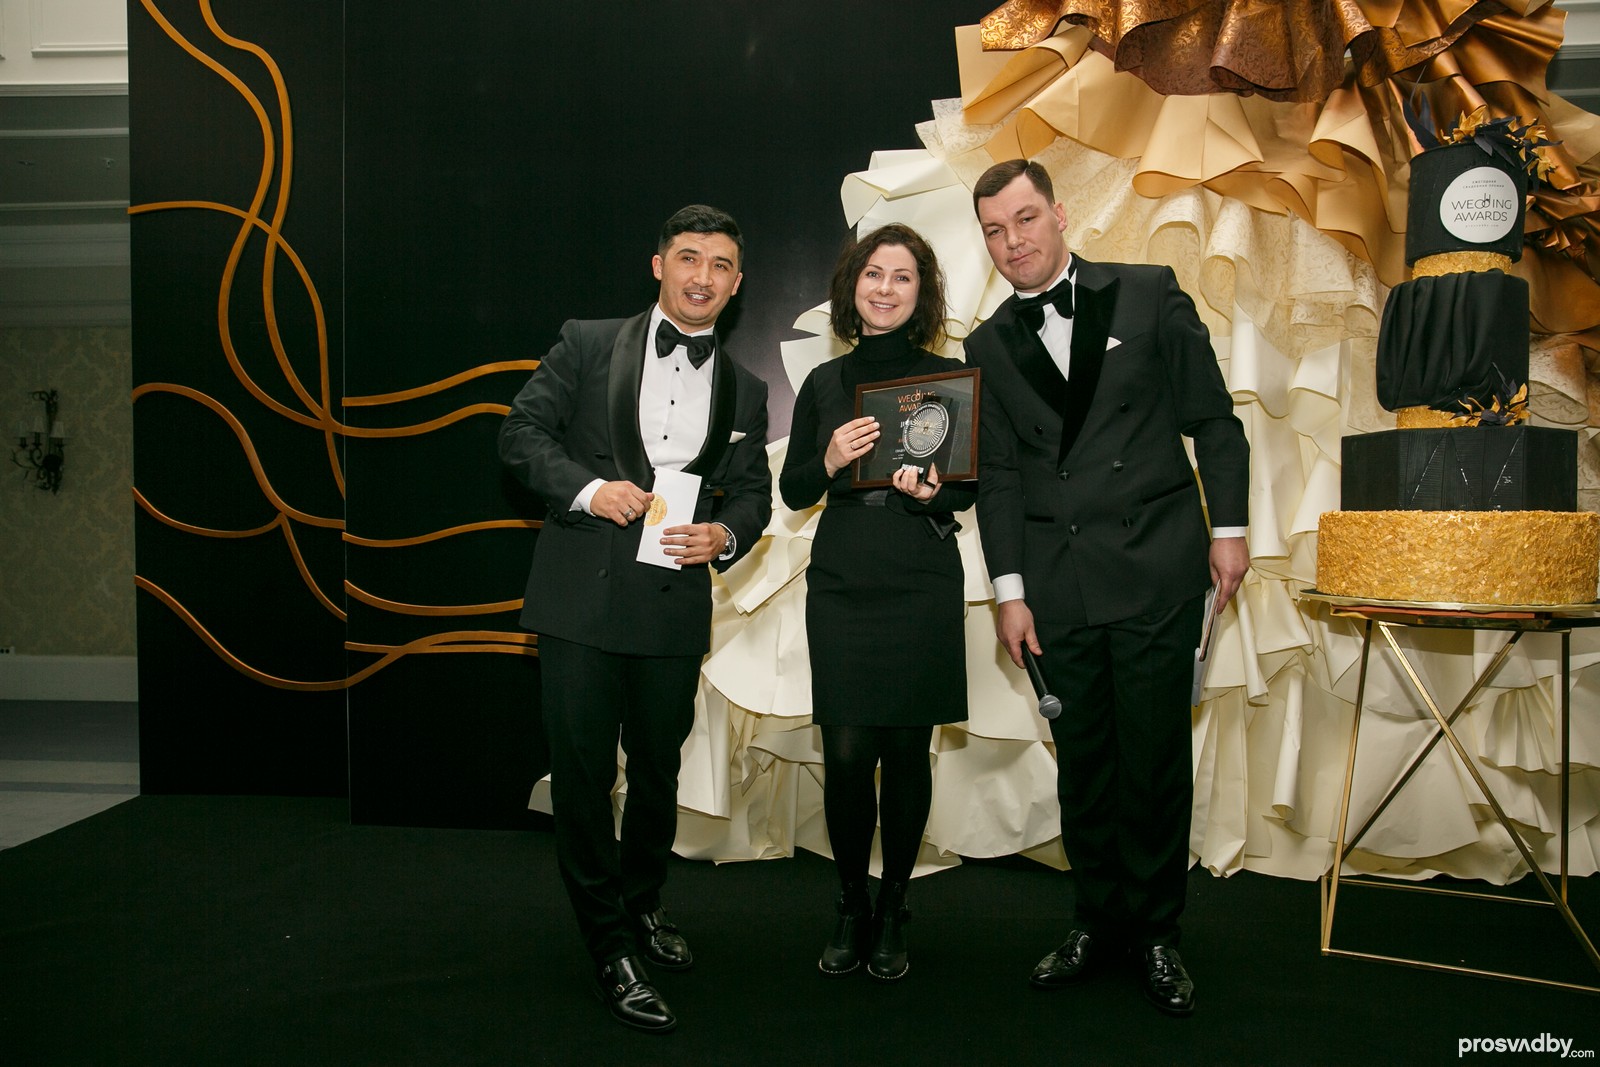 Стилист Анна Волкова во второй раз становится лауреатом Премии в номинации Свадебный образ года 2018. В первый раз статуэтку Анна получился в 2016 году. НАграду вручал самый стильный шоумен Талгат Самбай.